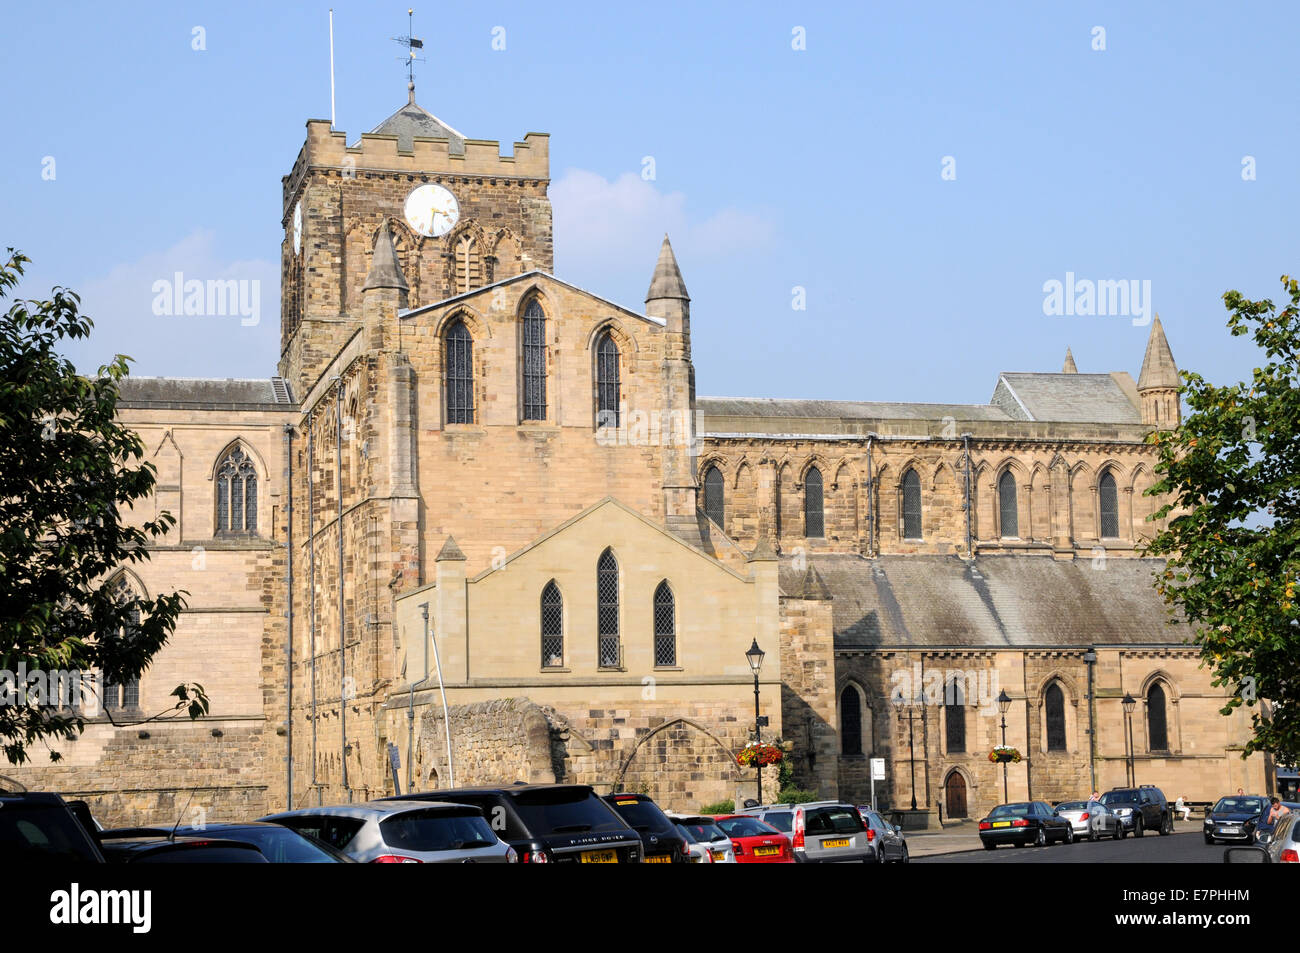 Hexham Abbey, è centrale per la vita della città con lo stesso nome. La città è situata nel Northumberland nel nord dell'Inghilterra. Foto Stock